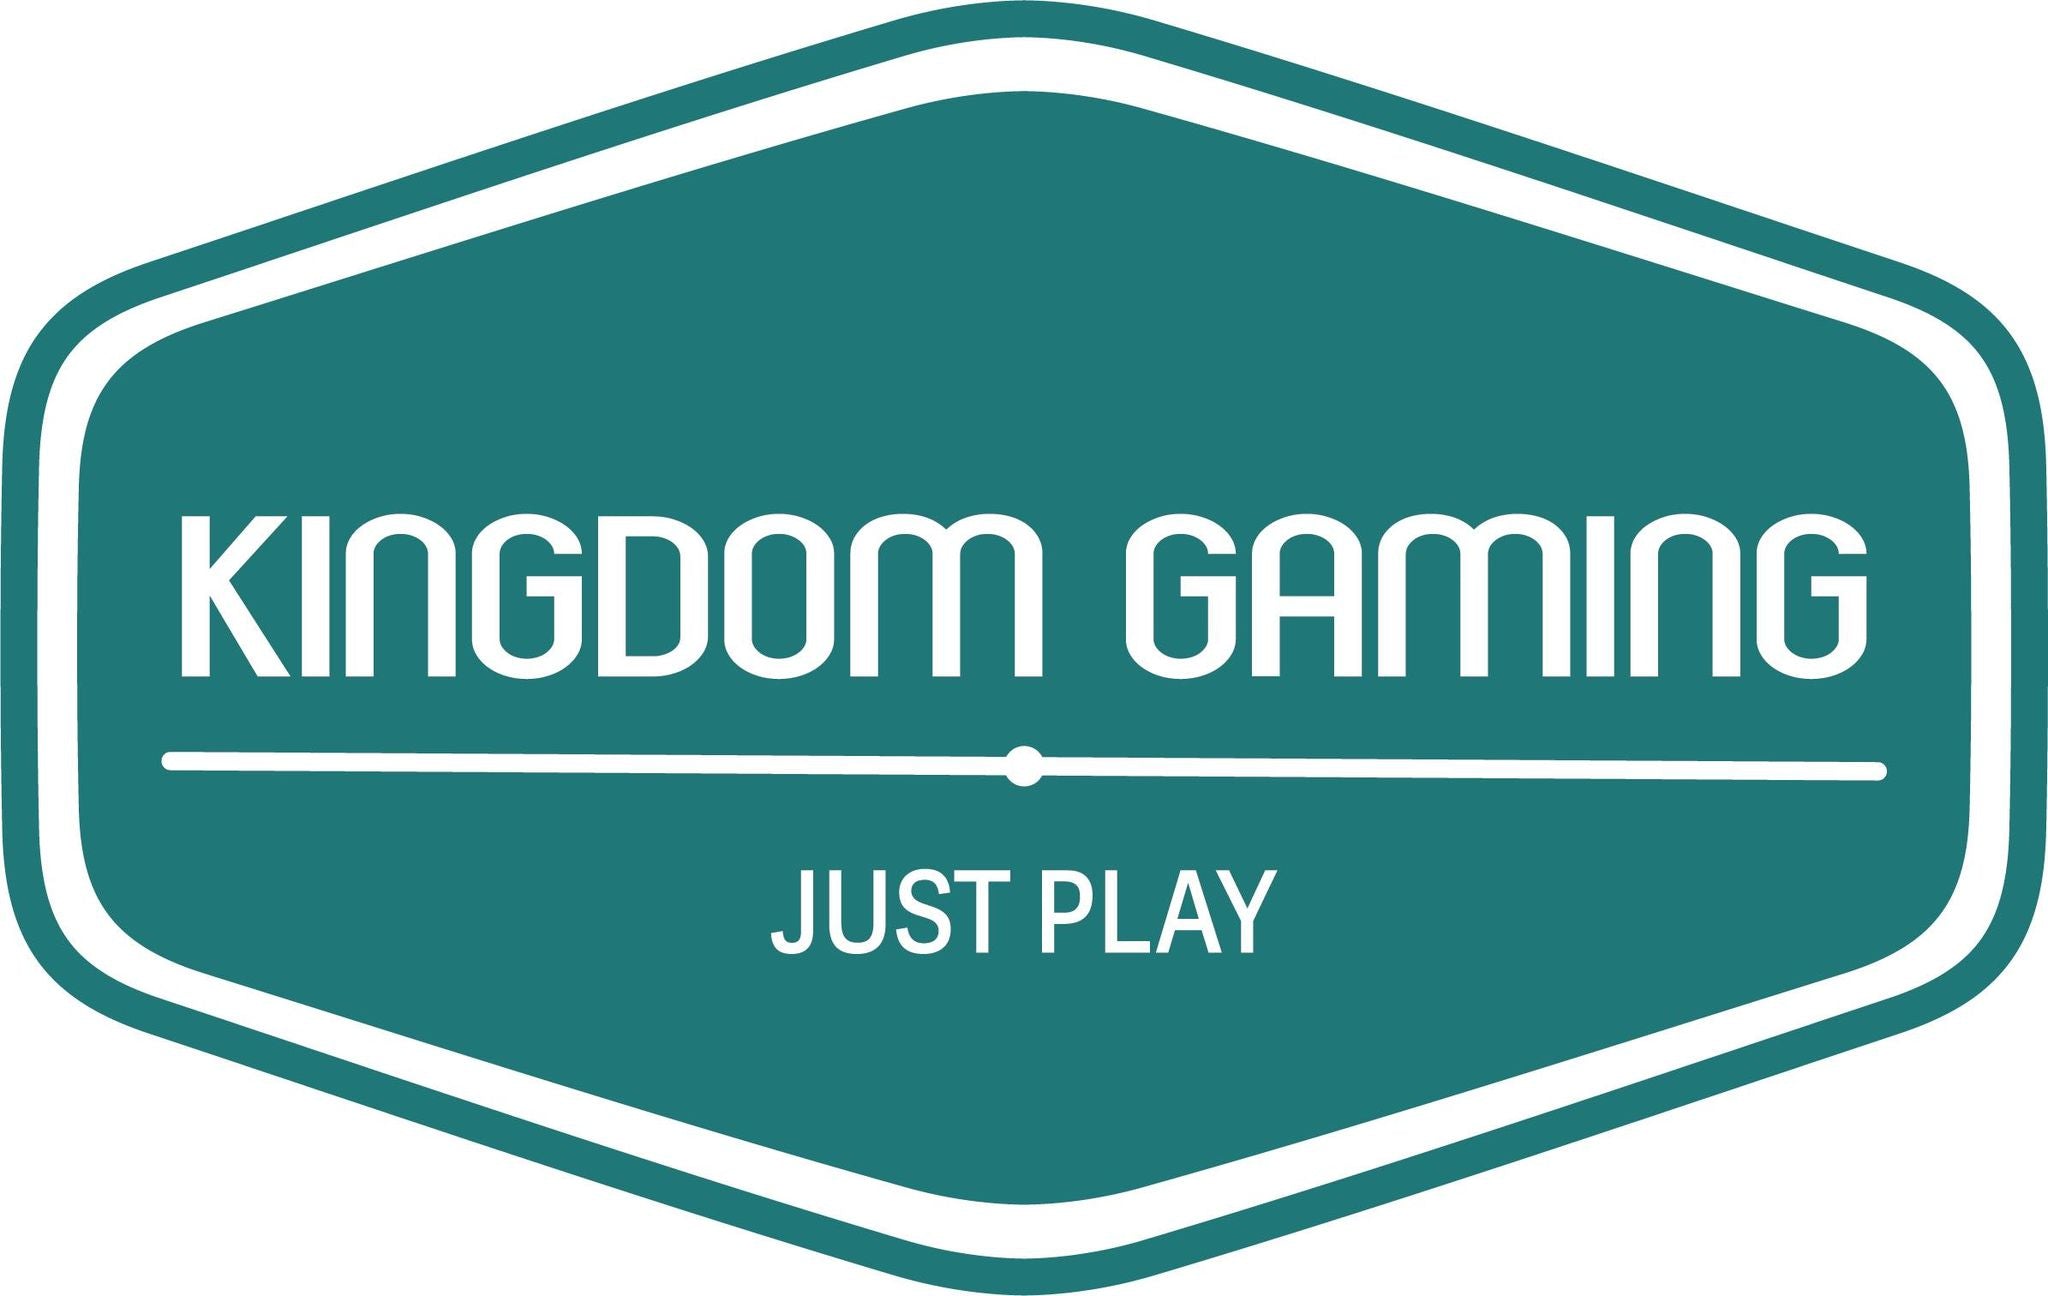 Kingdom Gaming Ltd